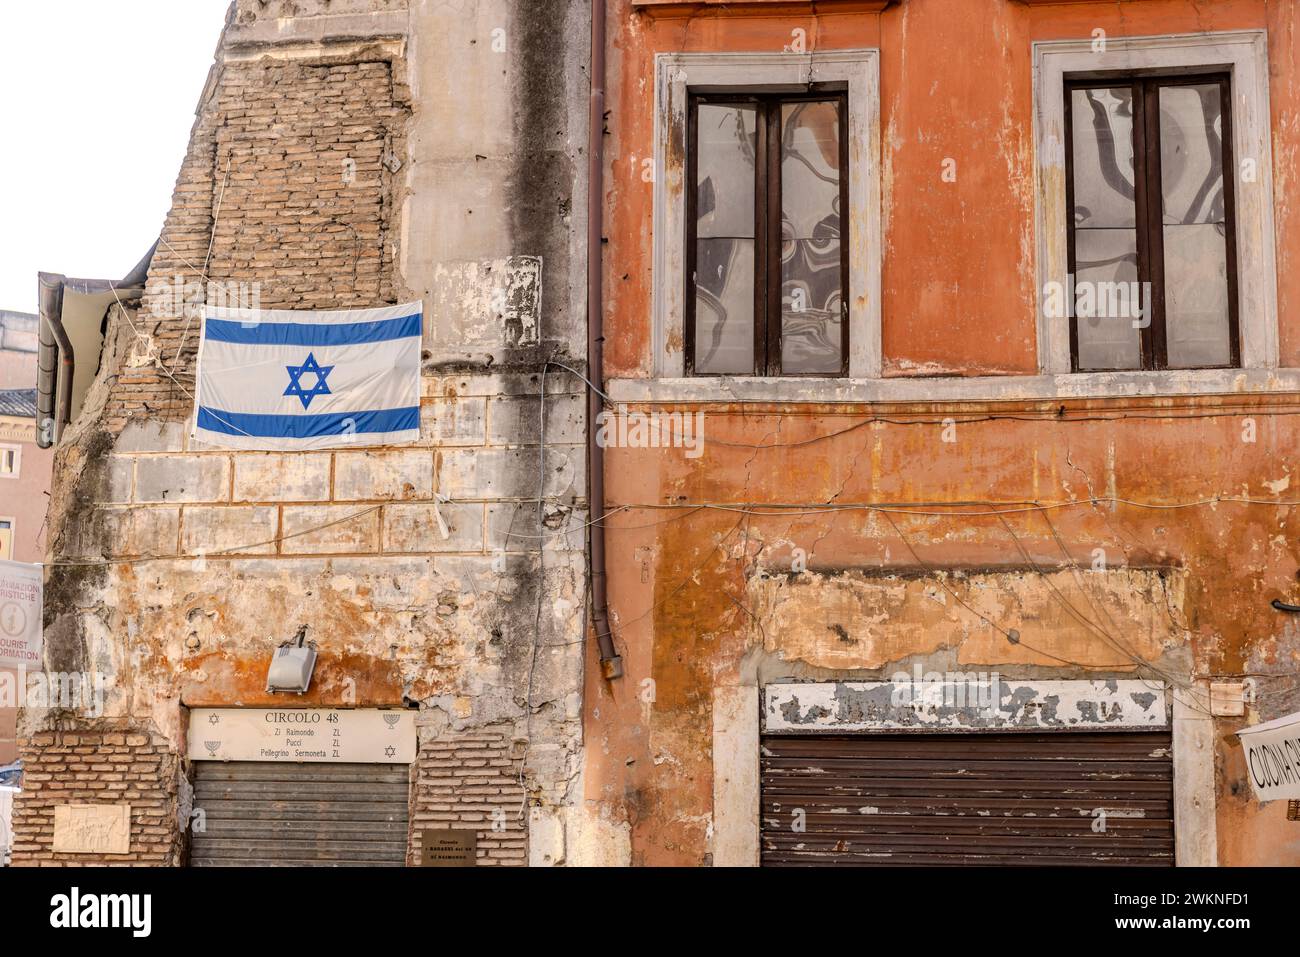 Die israelische Flagge hängt an einer Mauer im jüdischen Ghetto von Rom, Italien. Stockfoto